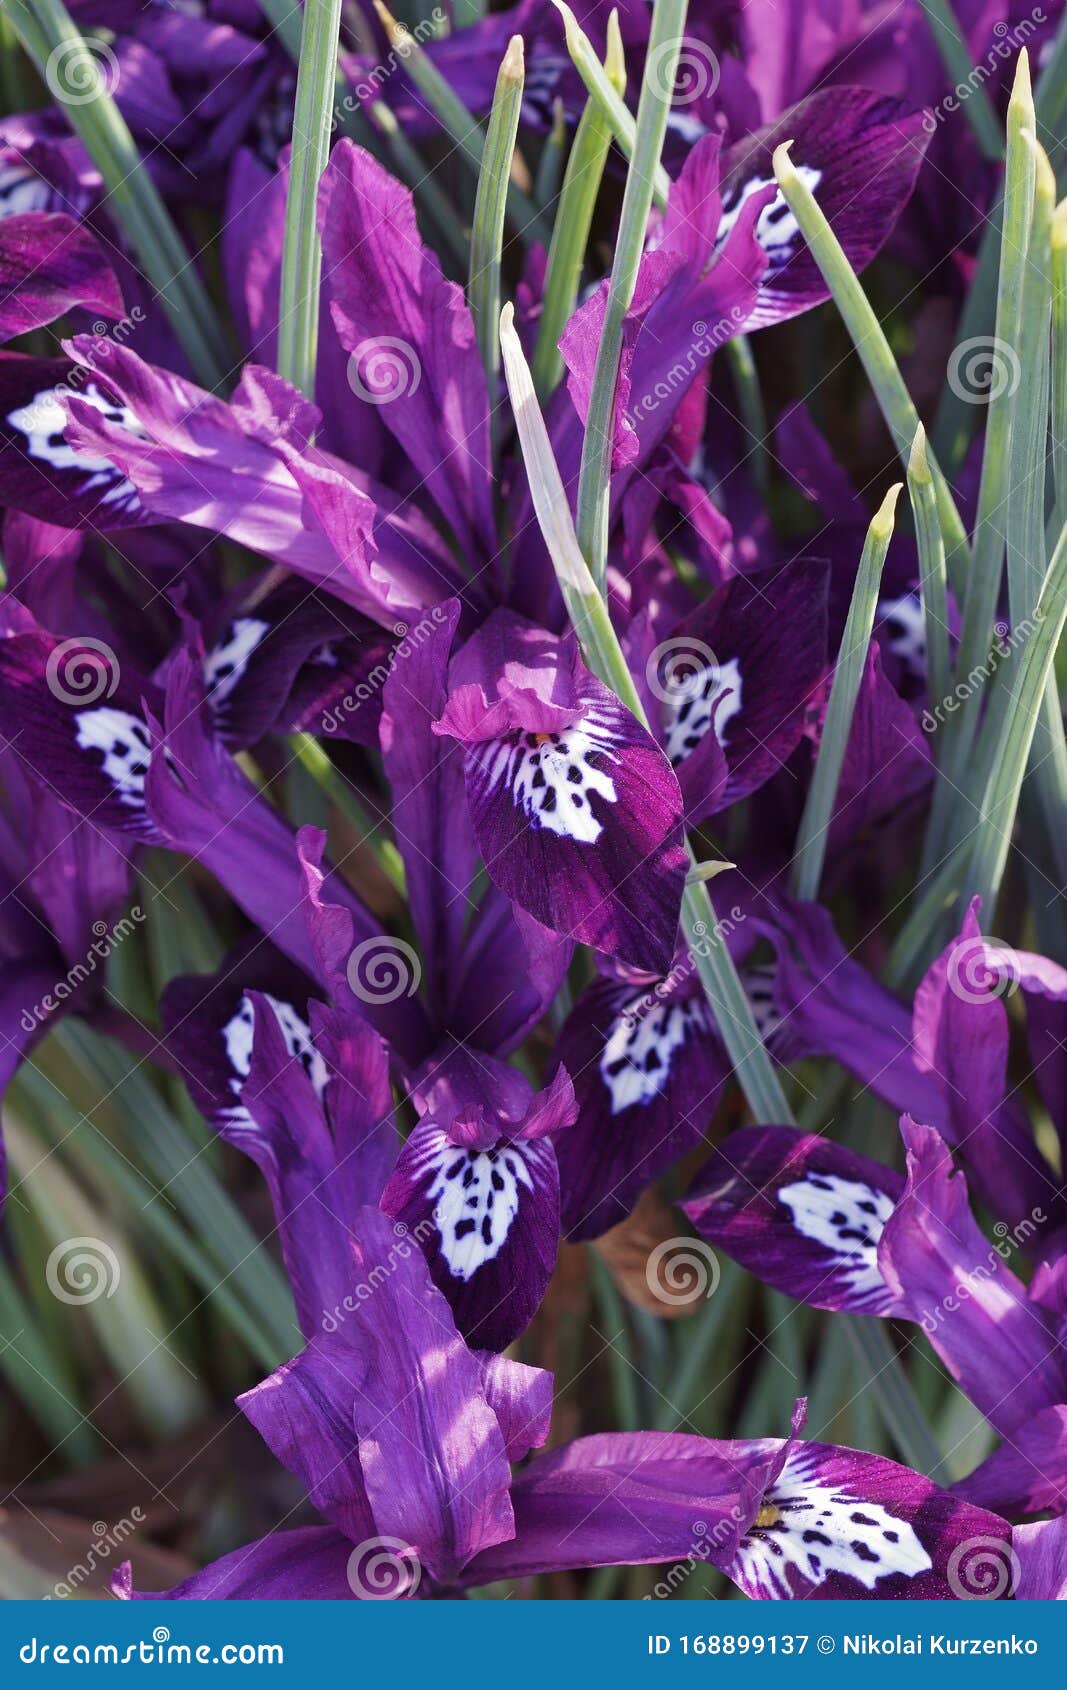 pauline dwarf iris flowers